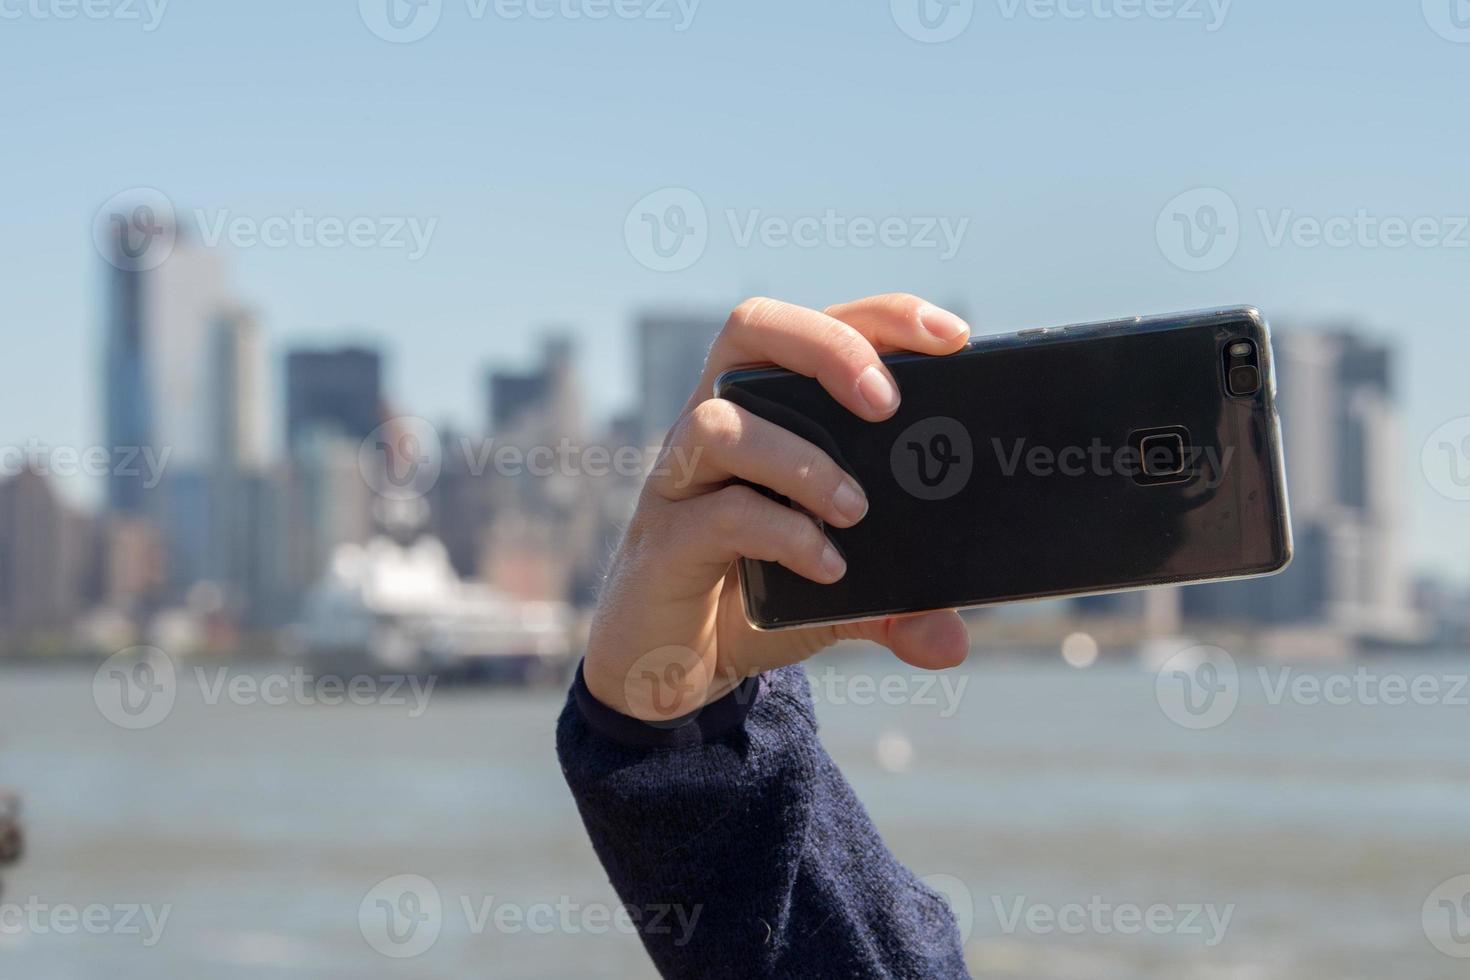 nieuw york Manhattan standbeeld van vrijheid toerist selfie met smartphone foto